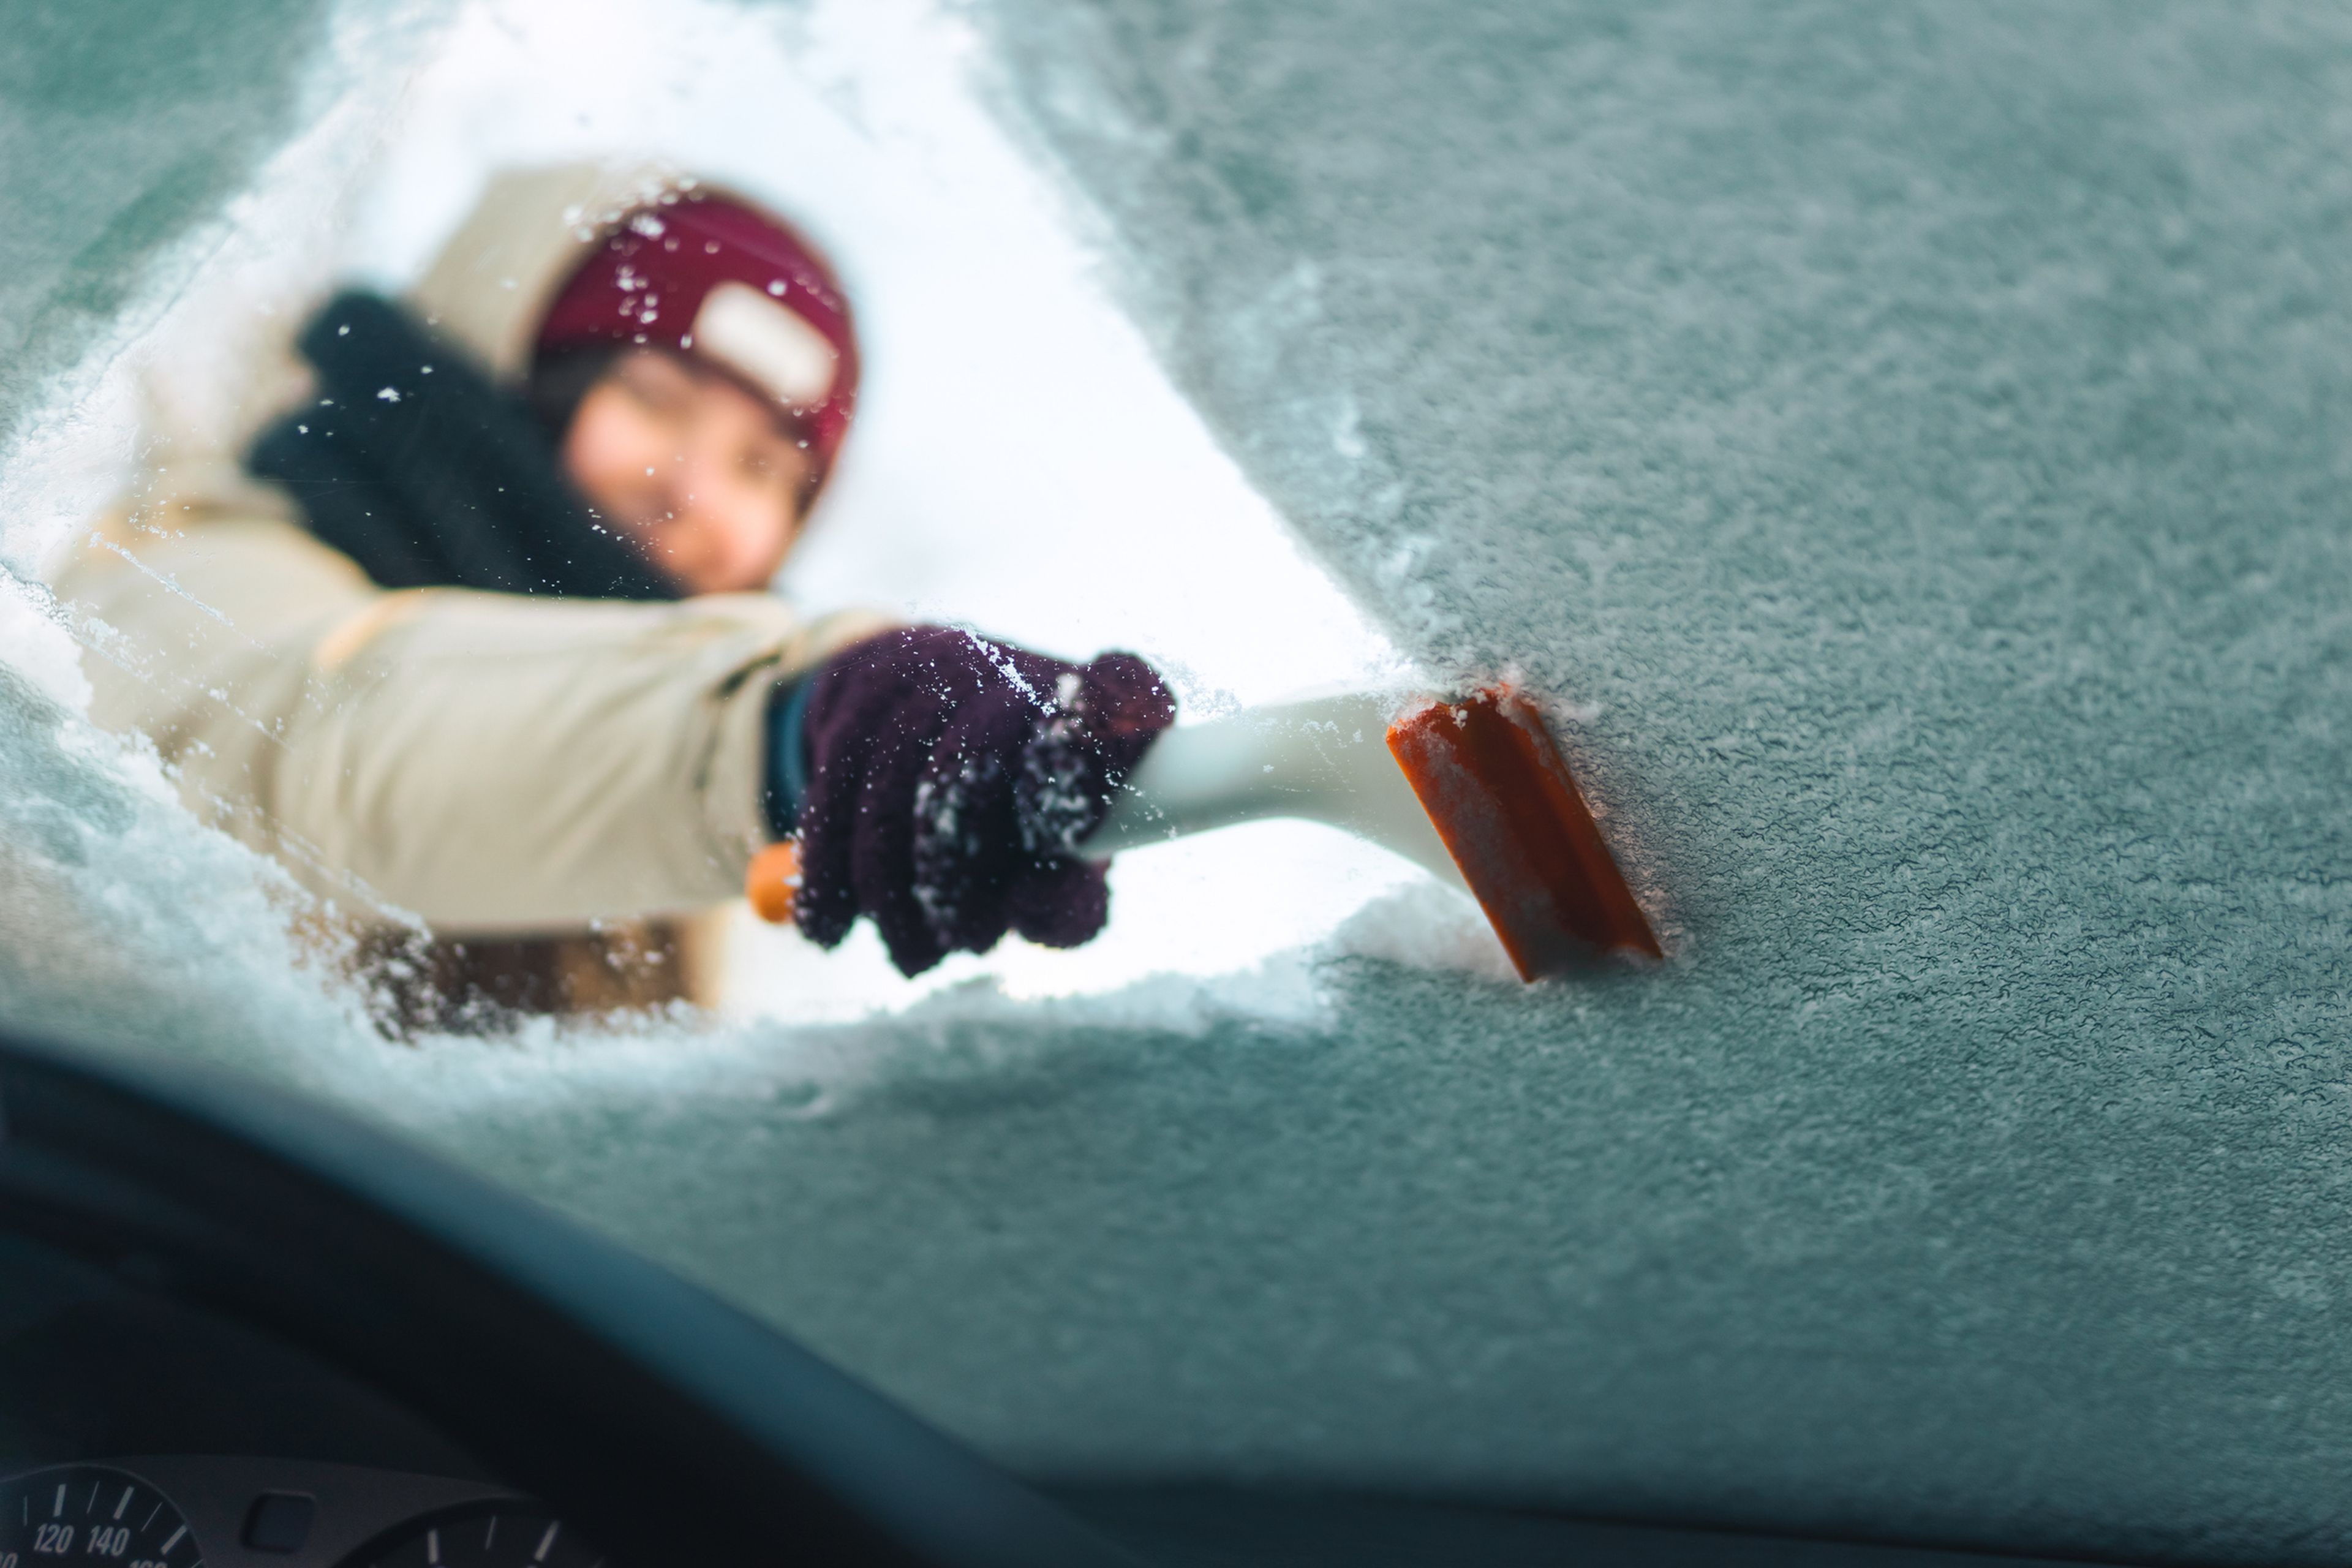 Cómo quitar el hielo sin estropear el parabrisas del coche